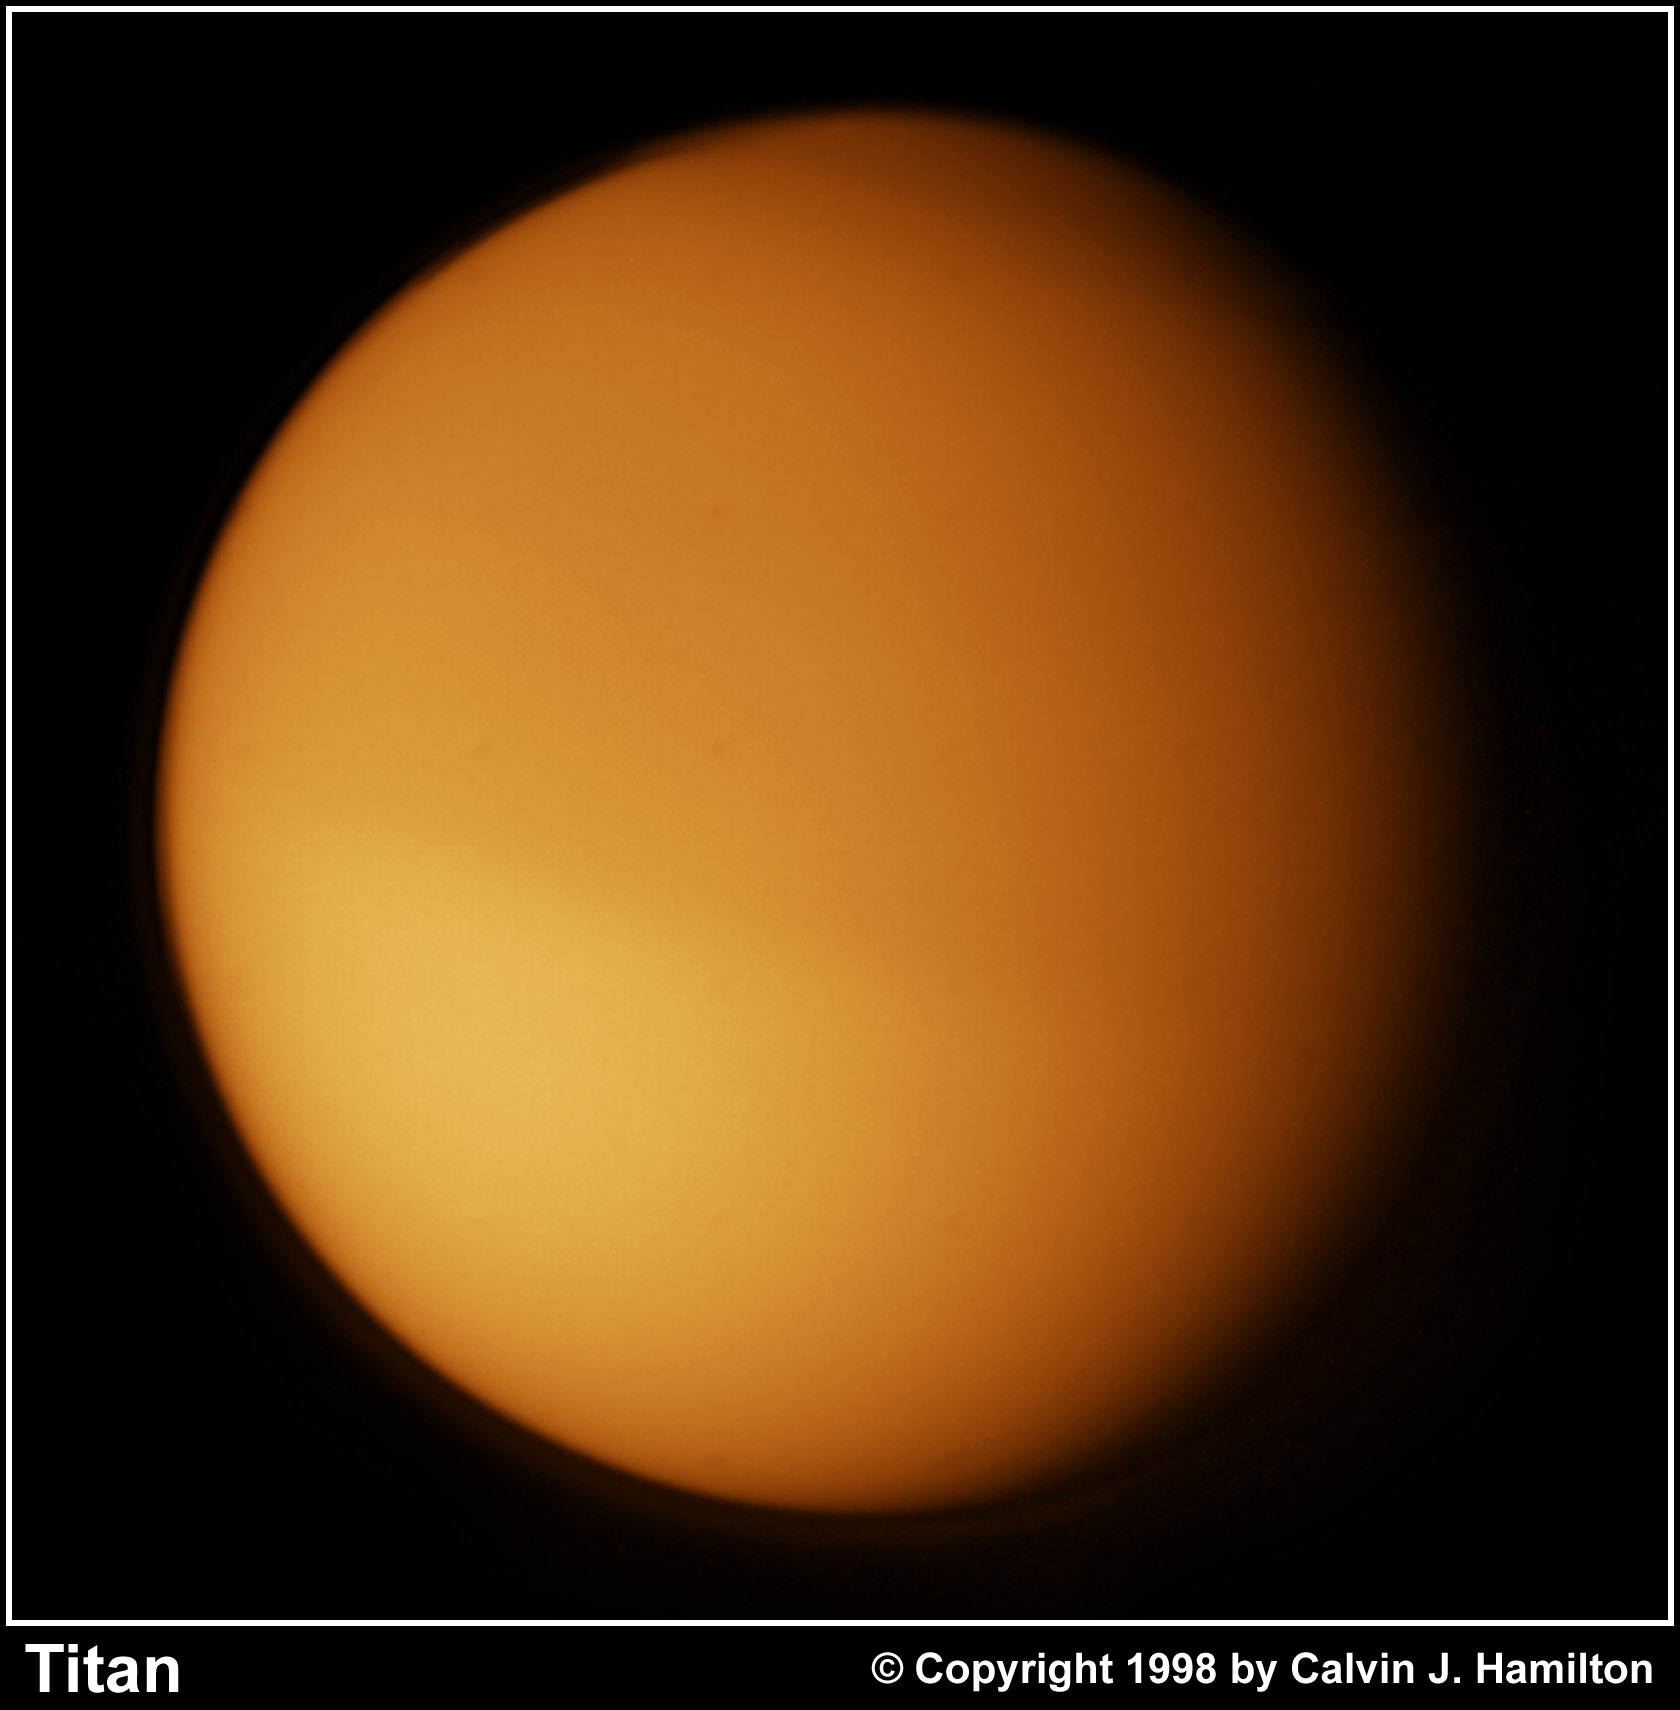 http://www.solarviews.com/raw/sat/titan1.jpg